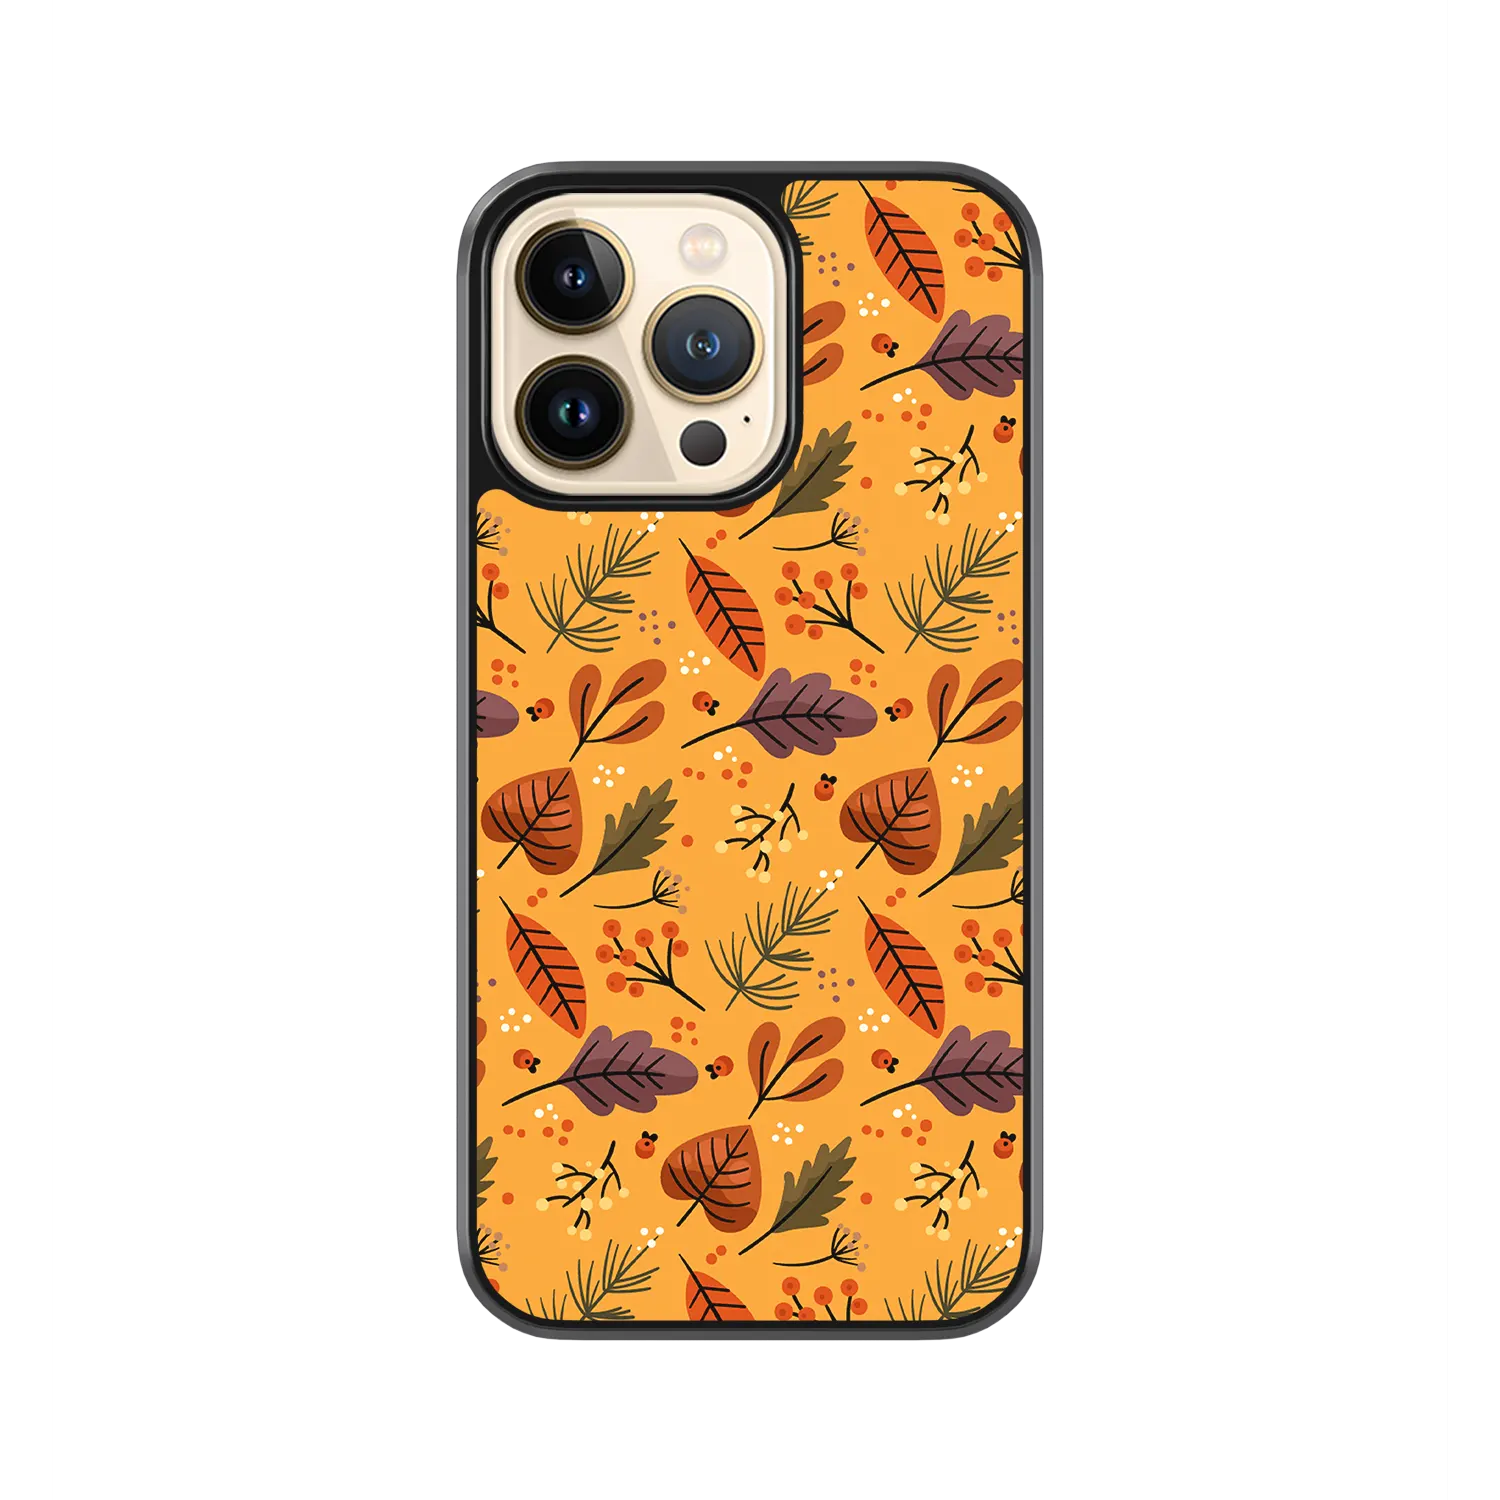 Autumn-Orange-iPhone-11-Pro-Max-Case.webp